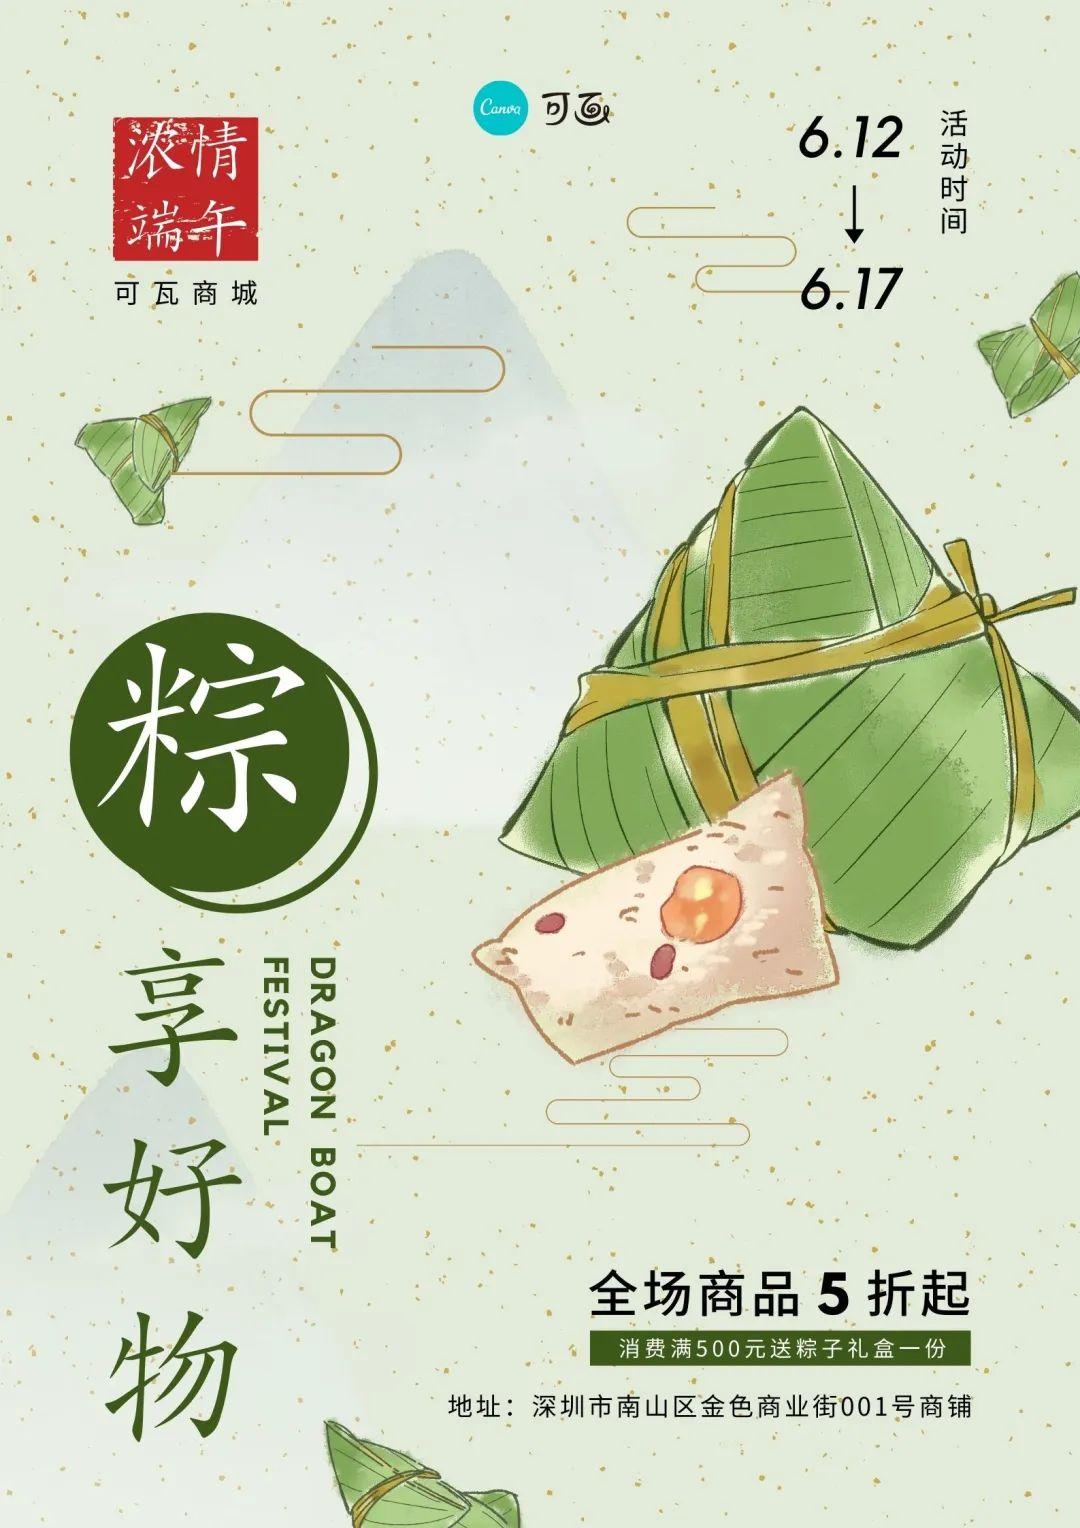 端午节餐饮粽子产品营销手机海报_图片模板素材-稿定设计